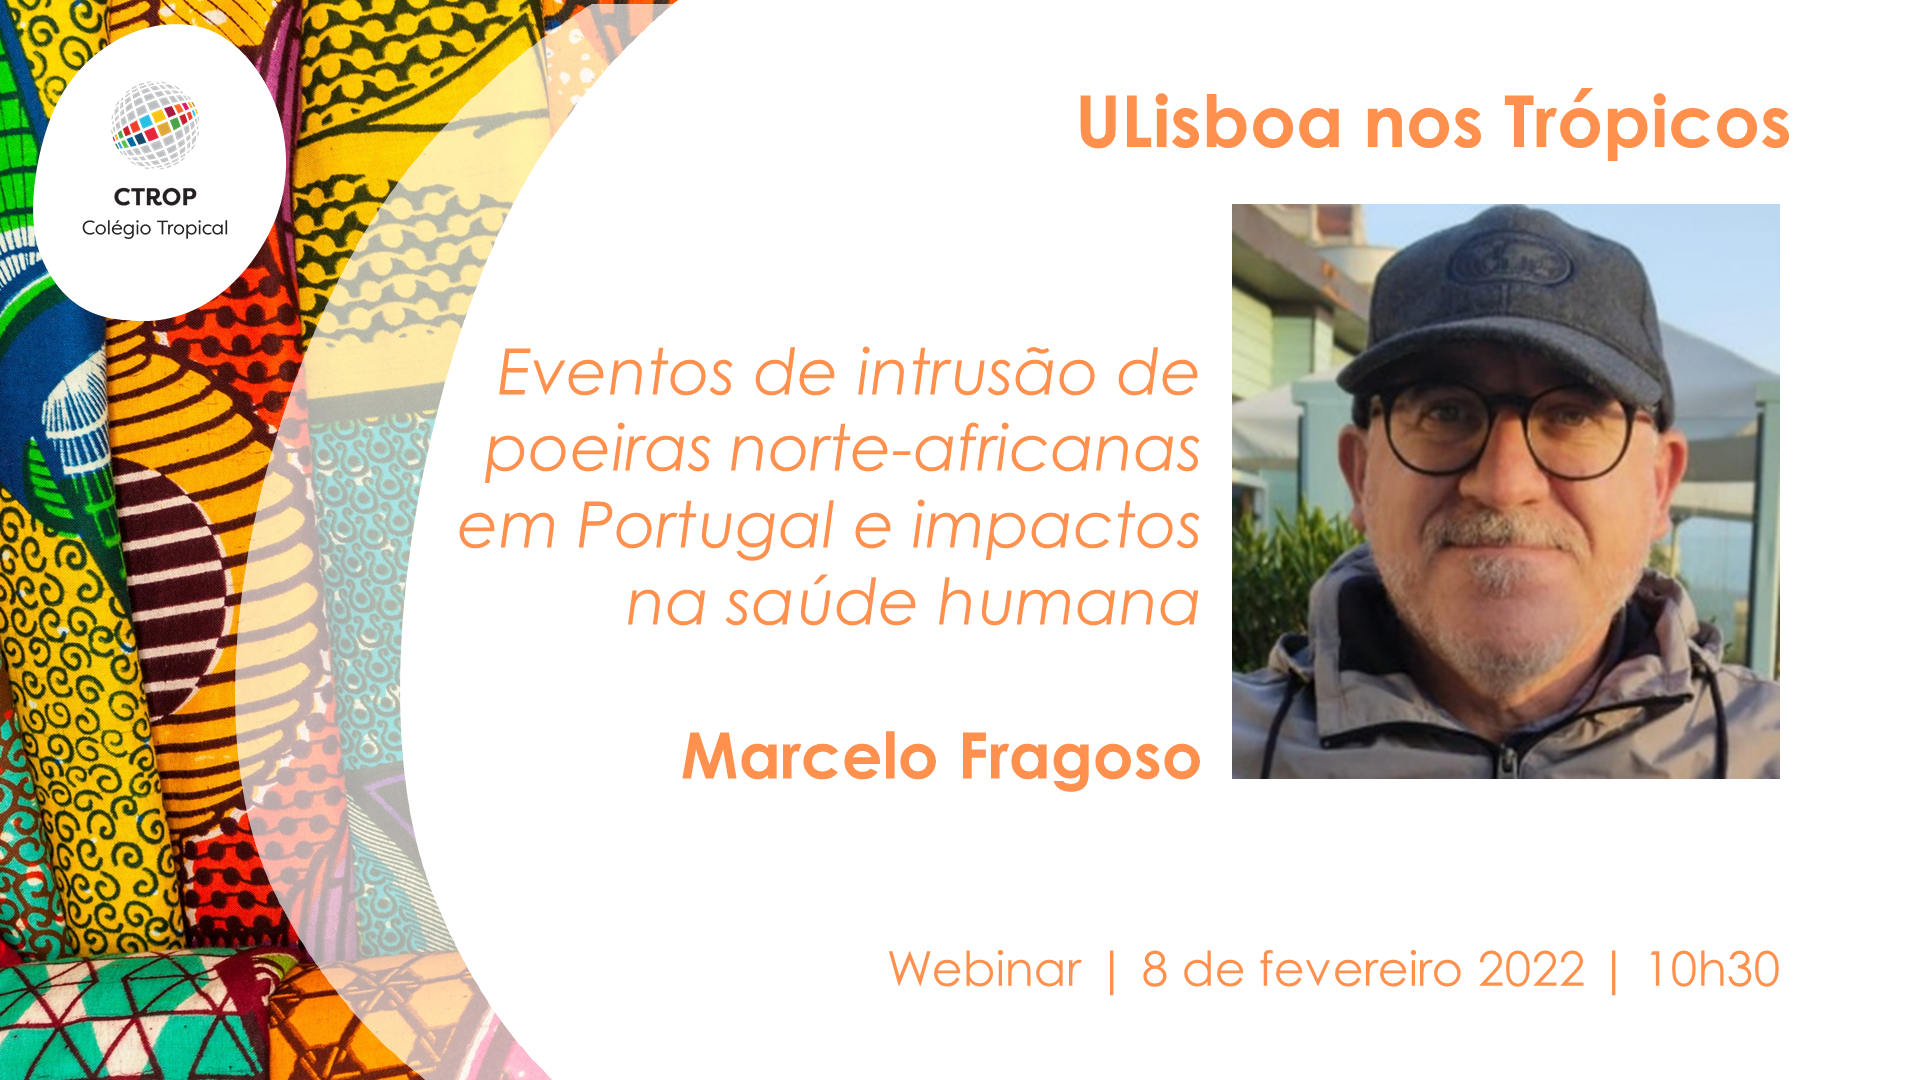 Webinar “ULisboa nos Trópicos | Eventos de Intrusão de Poeiras norte-africanas em Portugal e Impactos na Saúde Humana”